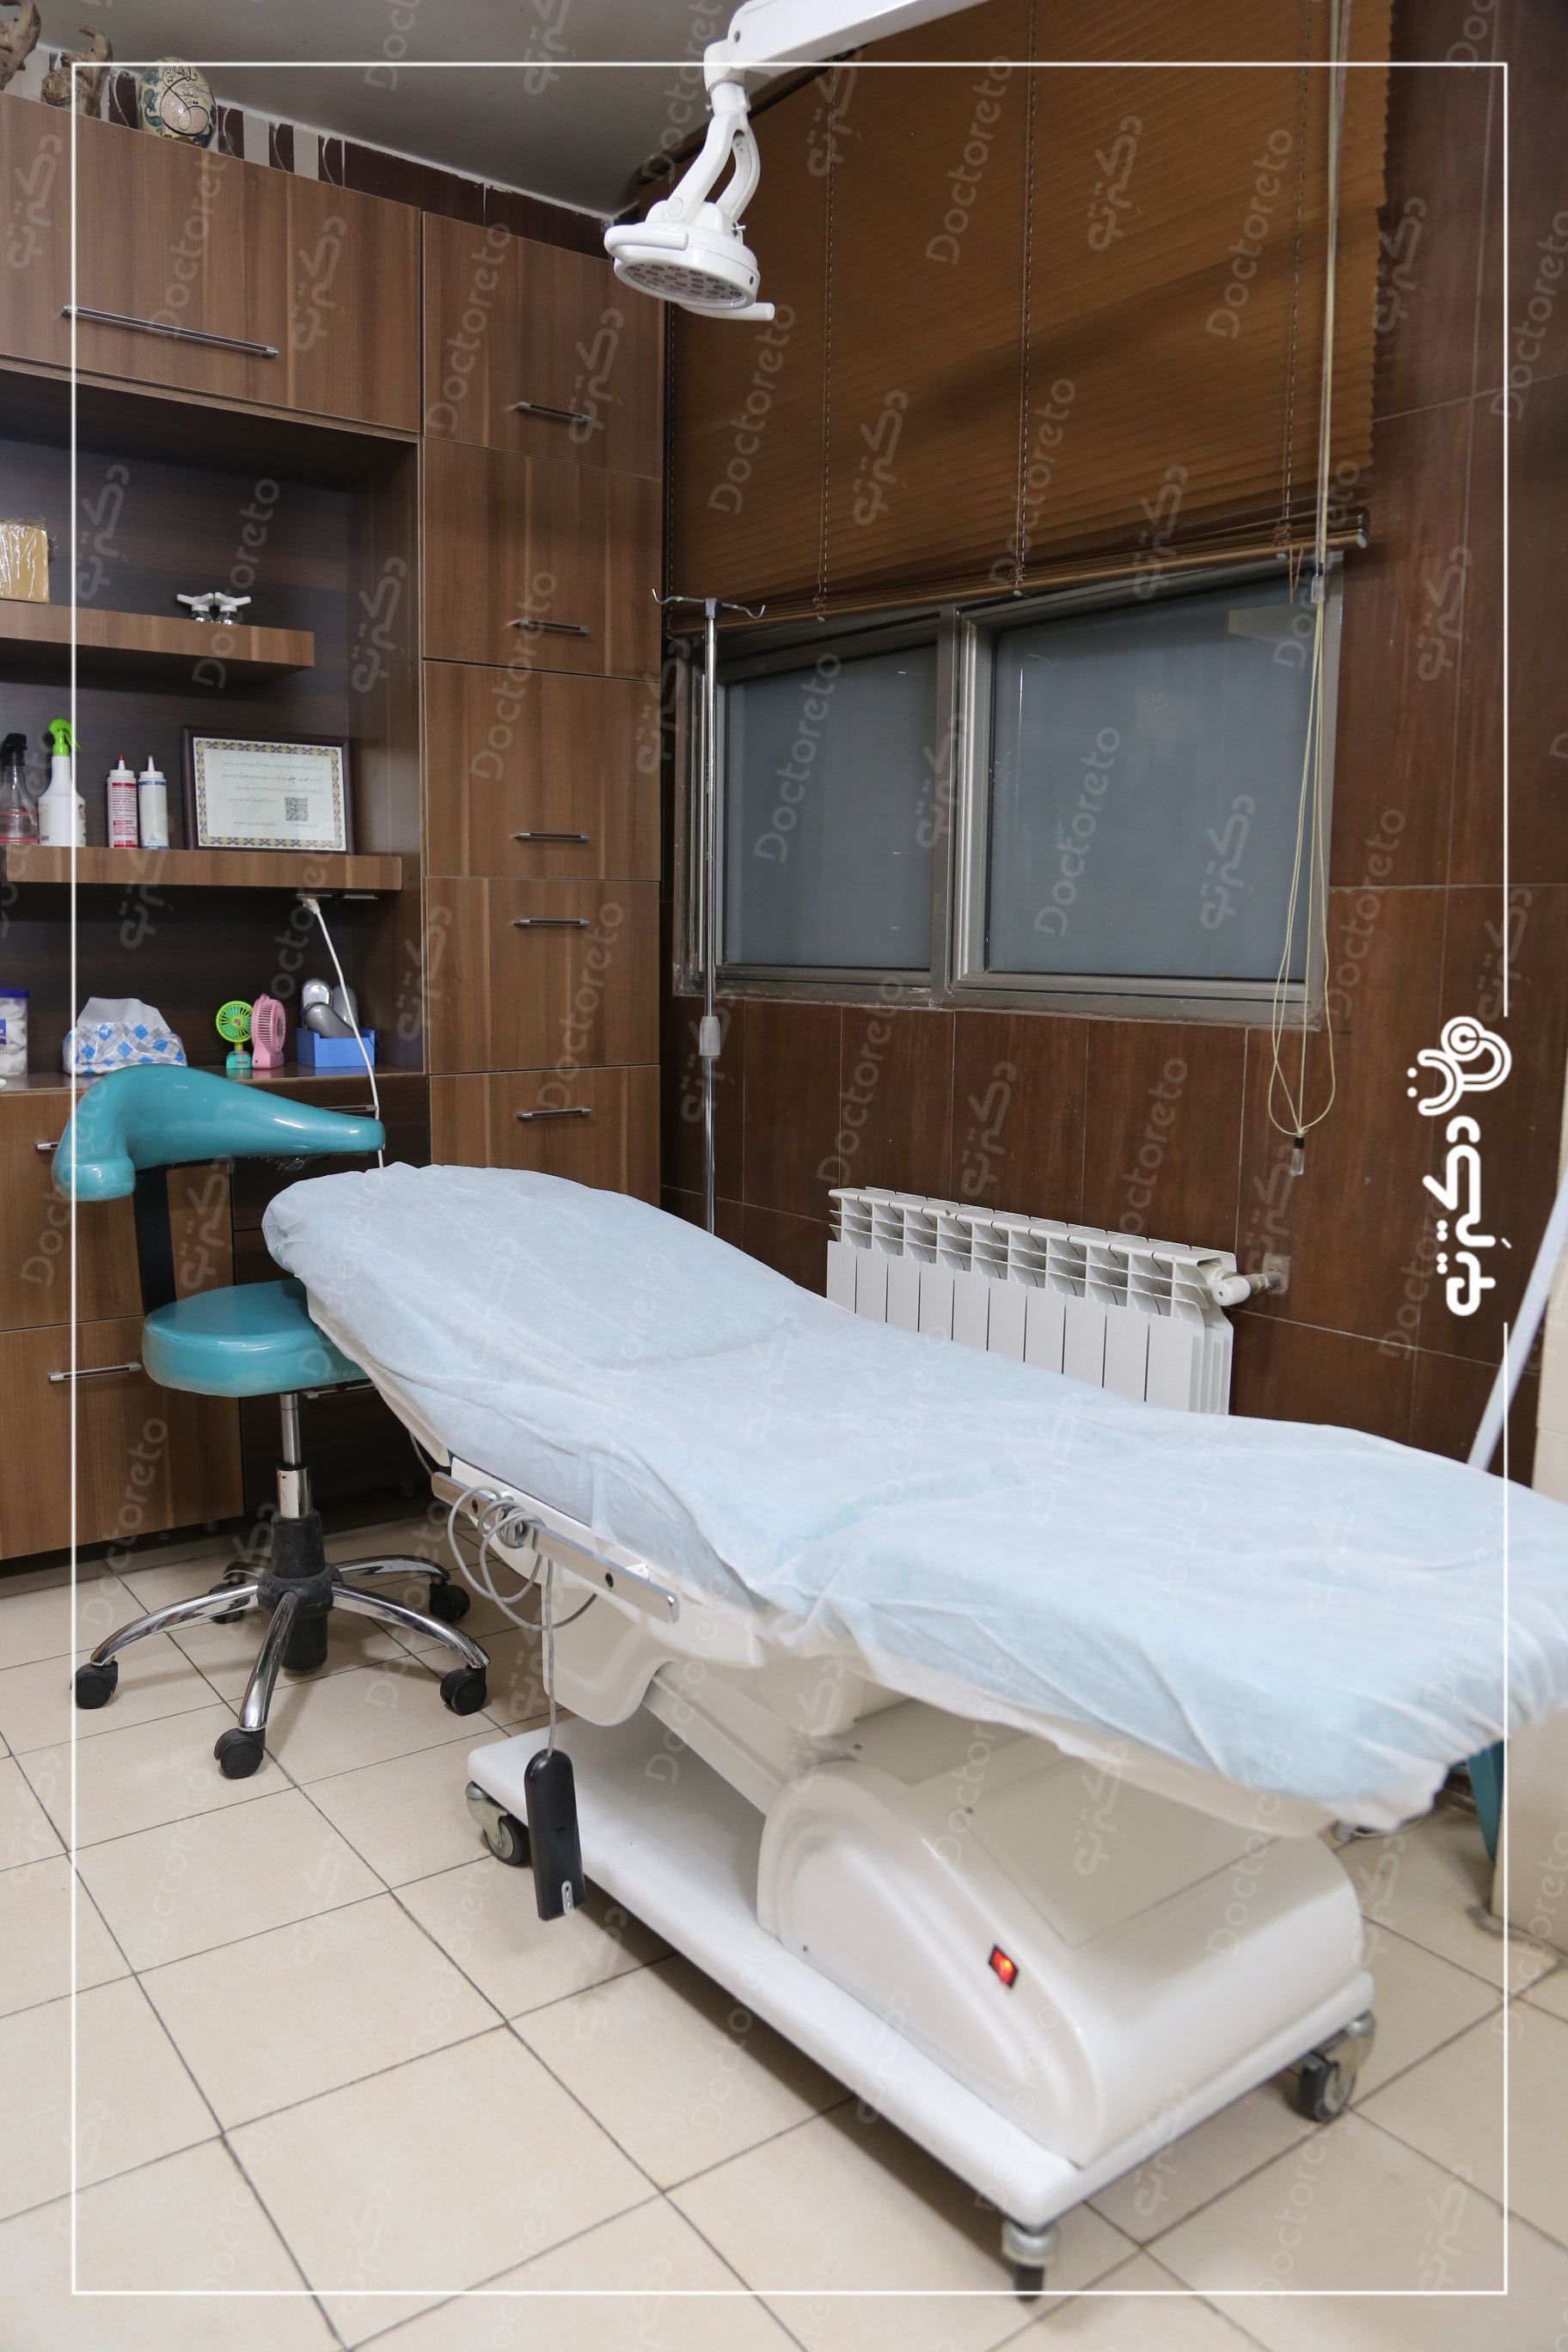 حذف تتو بدن با استفاده از دستگاه لیزر کیوسوییچ (هر5 سانت) دکتر محسن سلیمانی در اصفهان 3